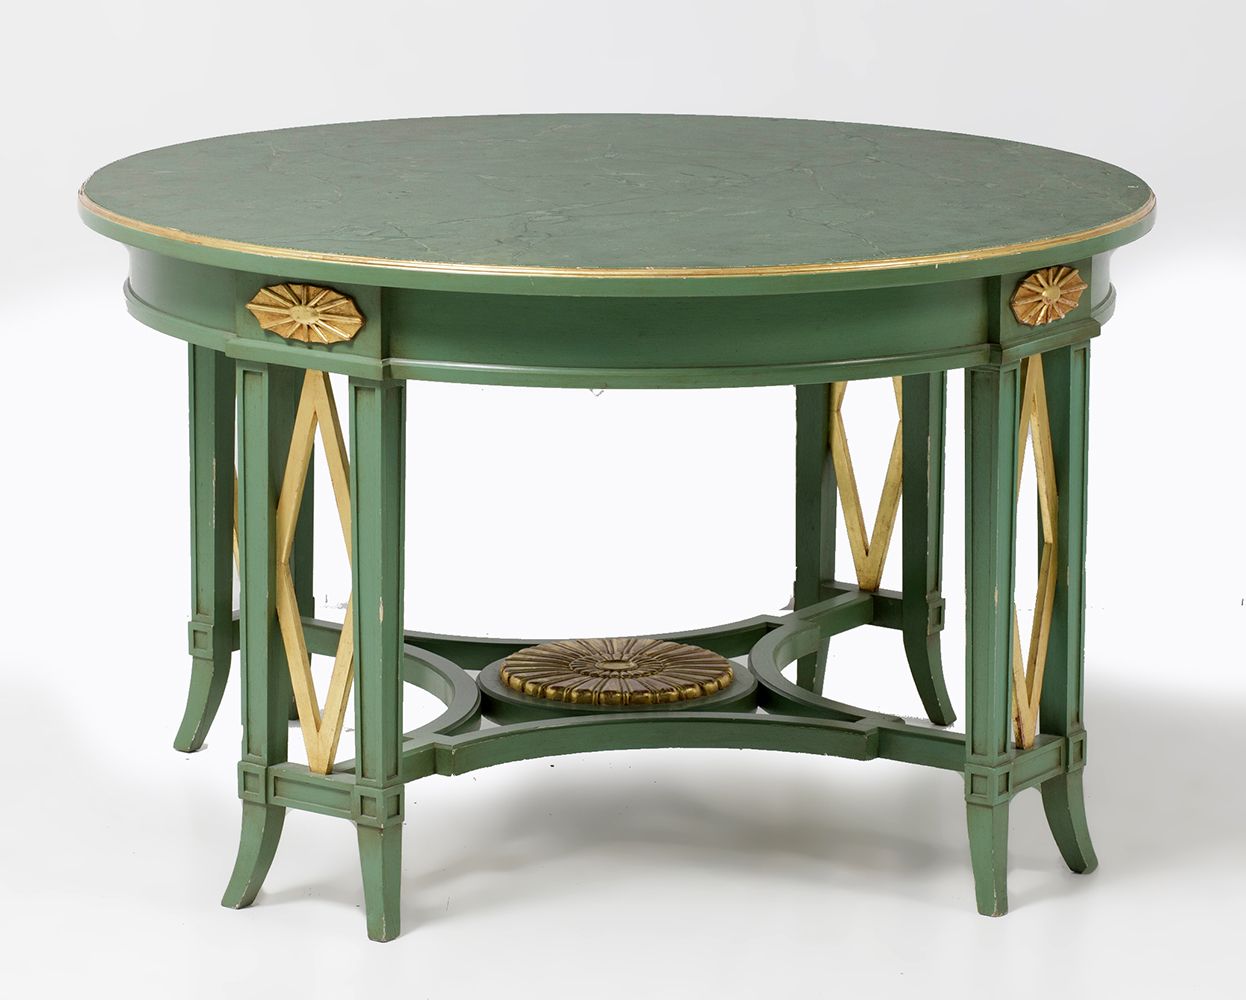 Green painted coffee table 带大理石纹和绿漆的木质茶几，有鎏金亮点。74 x 123厘米。